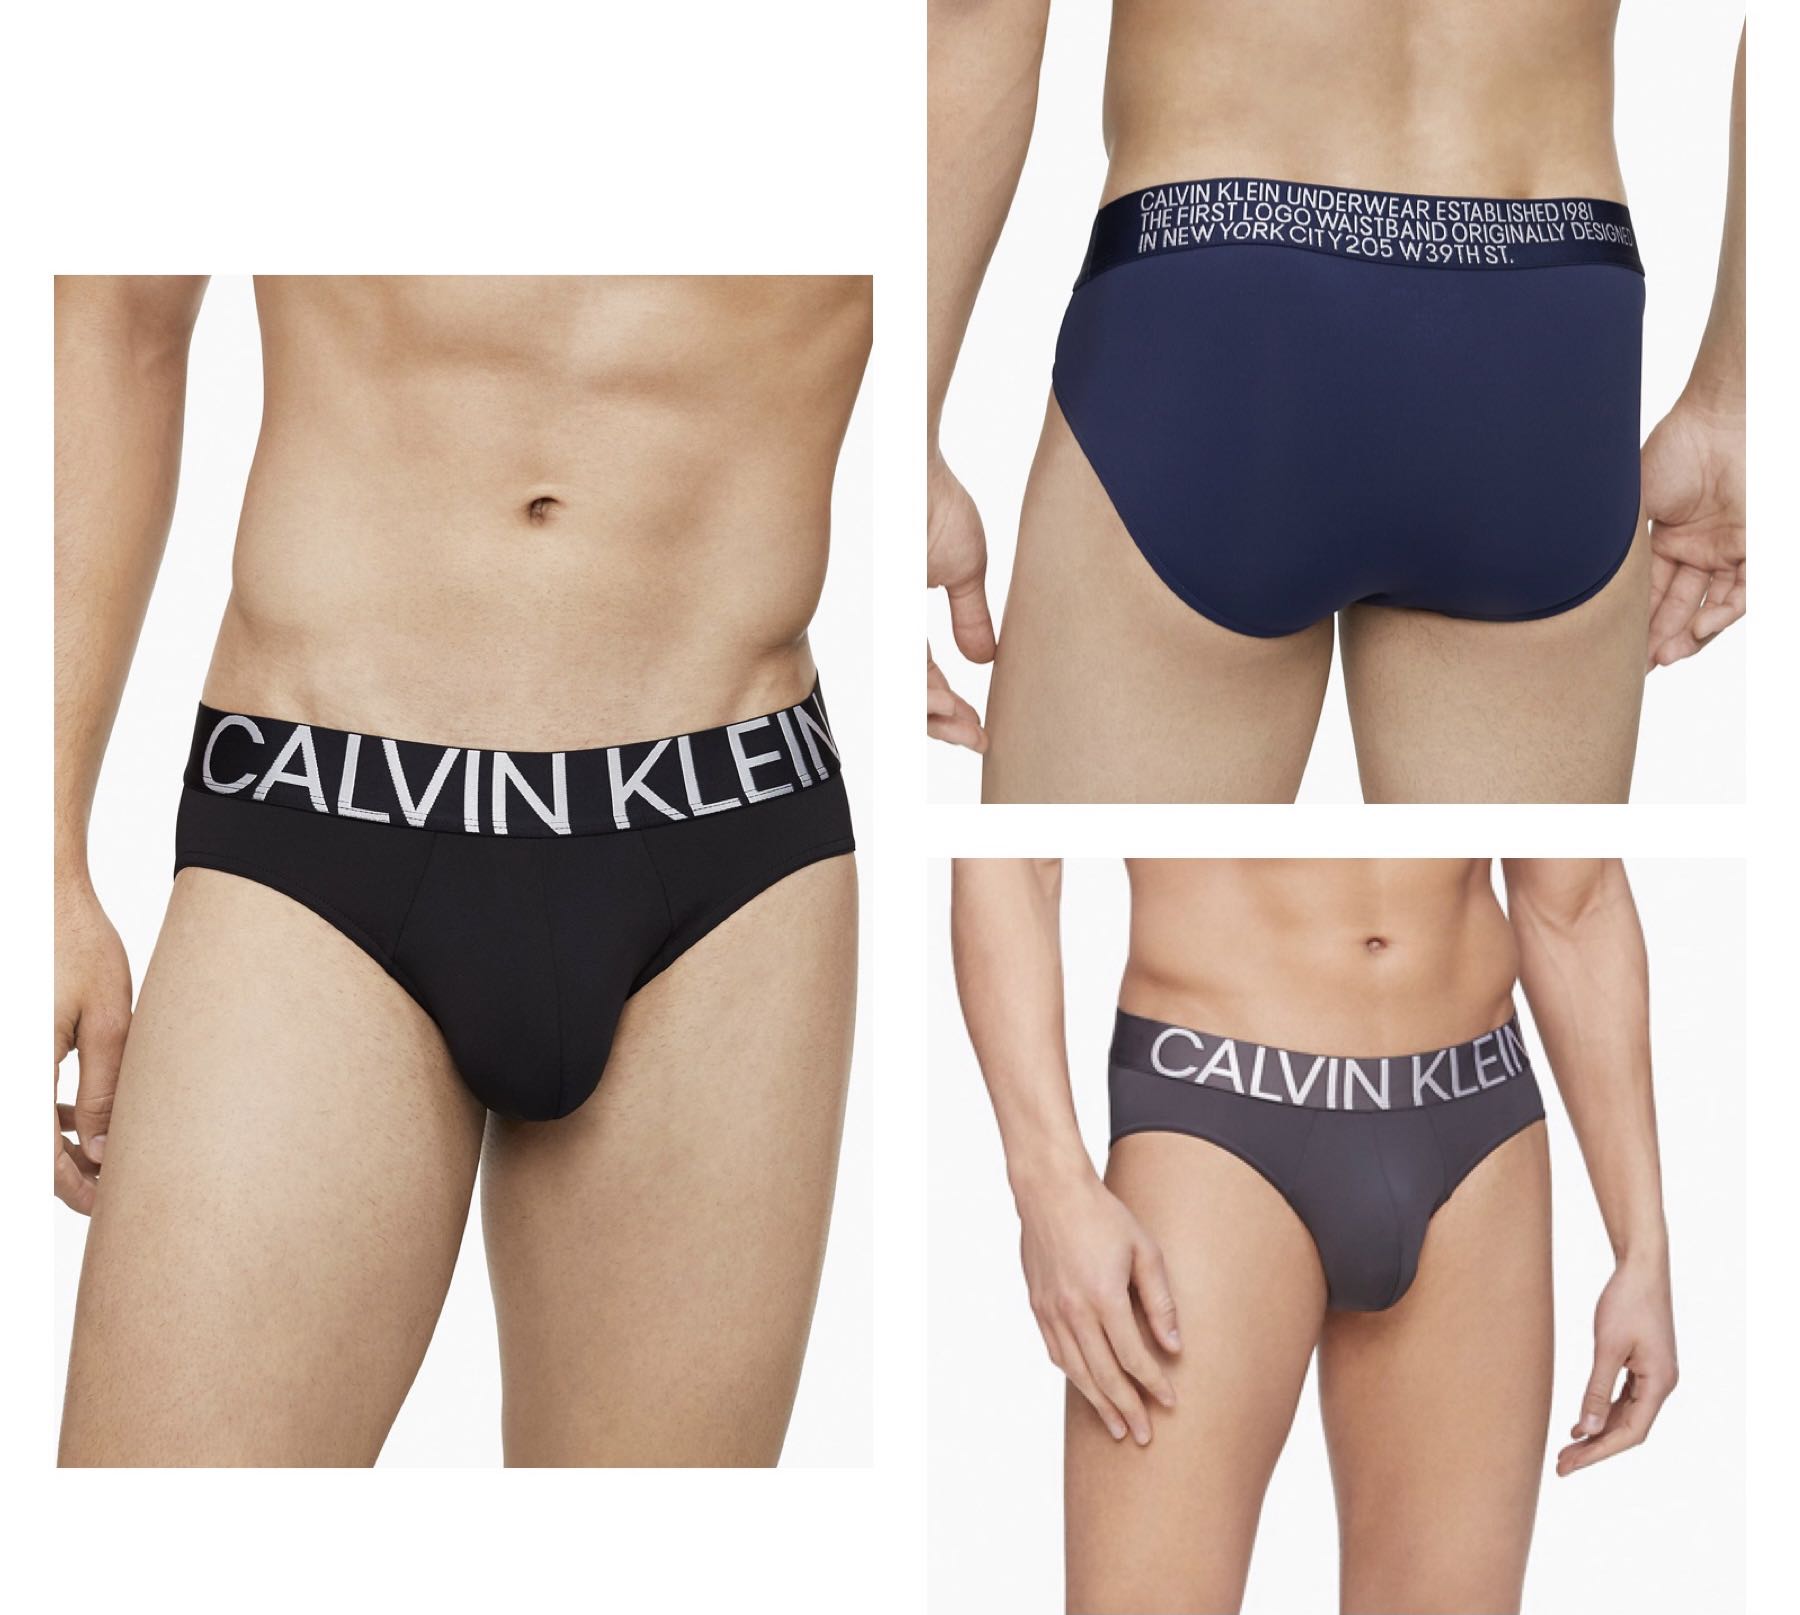 M) Calvin Klein Men Underwear Statement 1981 Micro Hip Brief, Men's  Fashion, Bottoms, New Underwear on Carousell